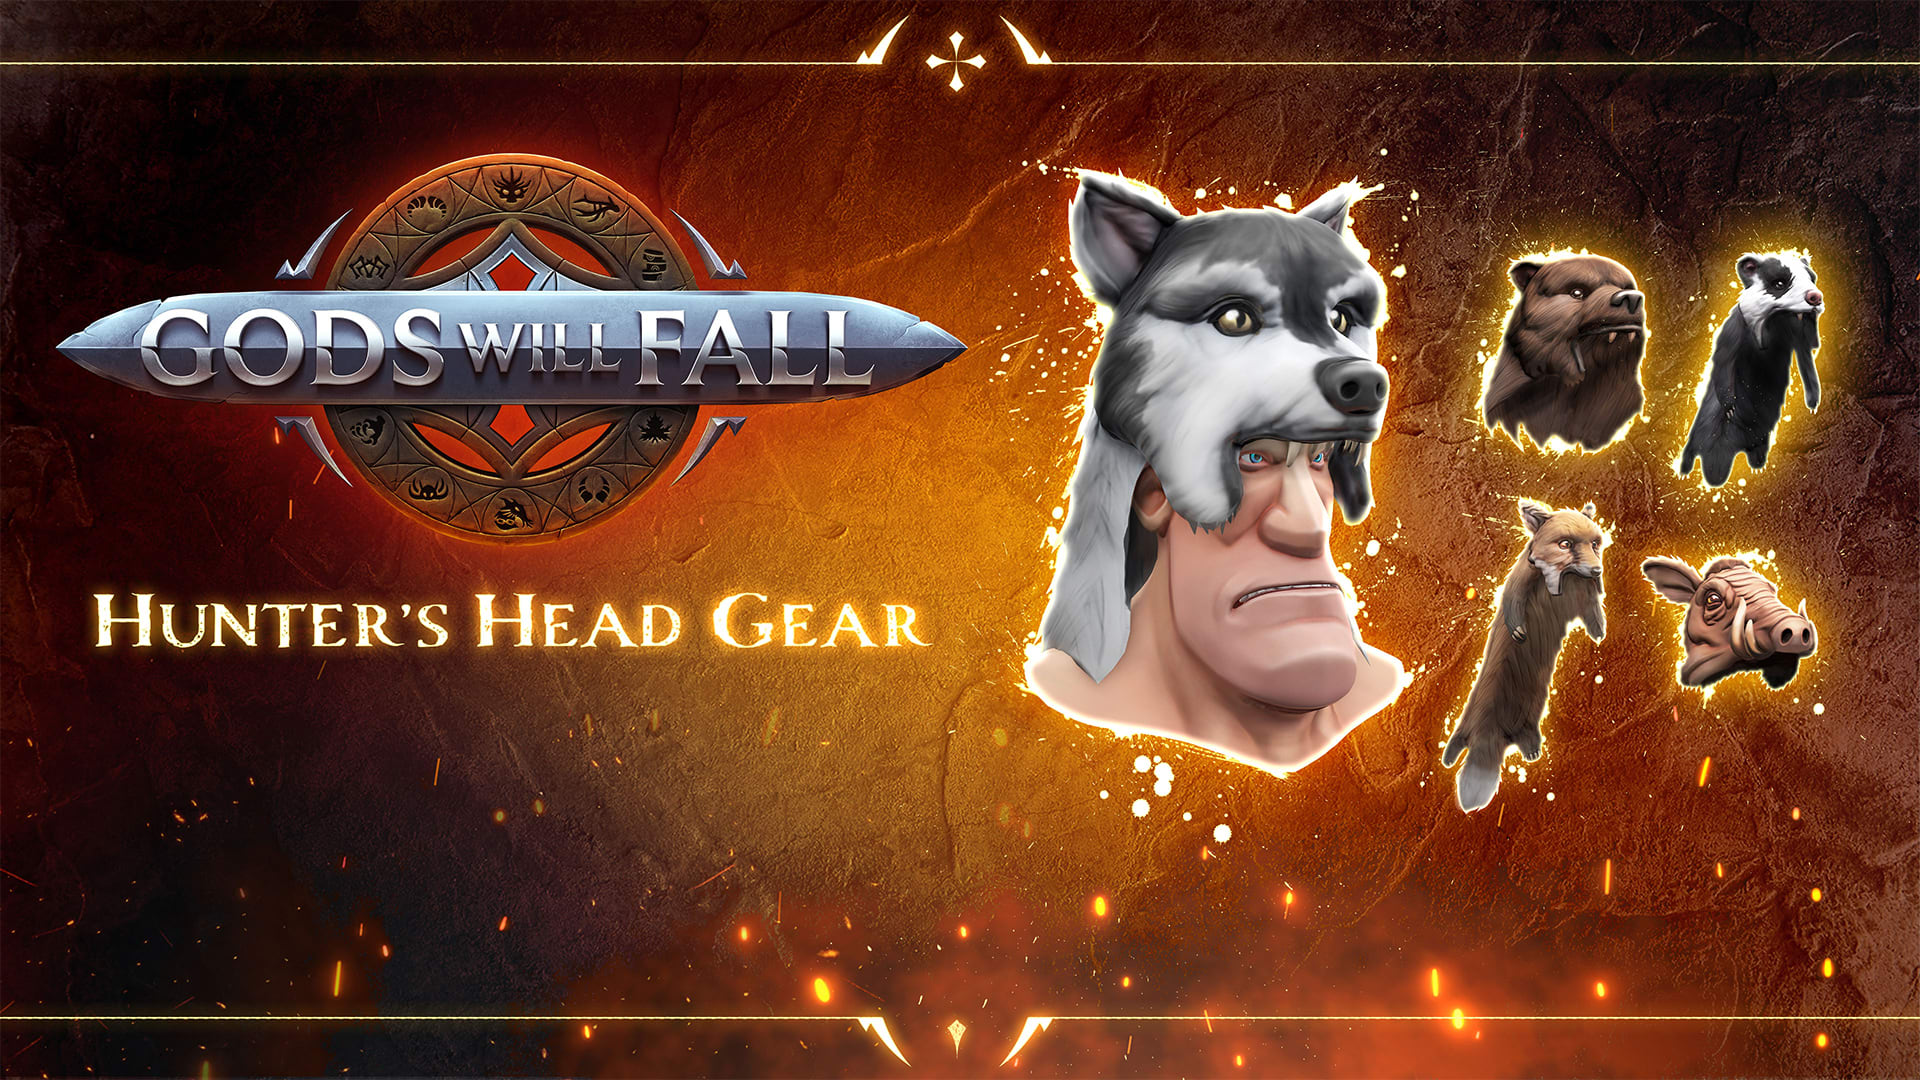 Gods Will Fall - Hunter's Head Gear